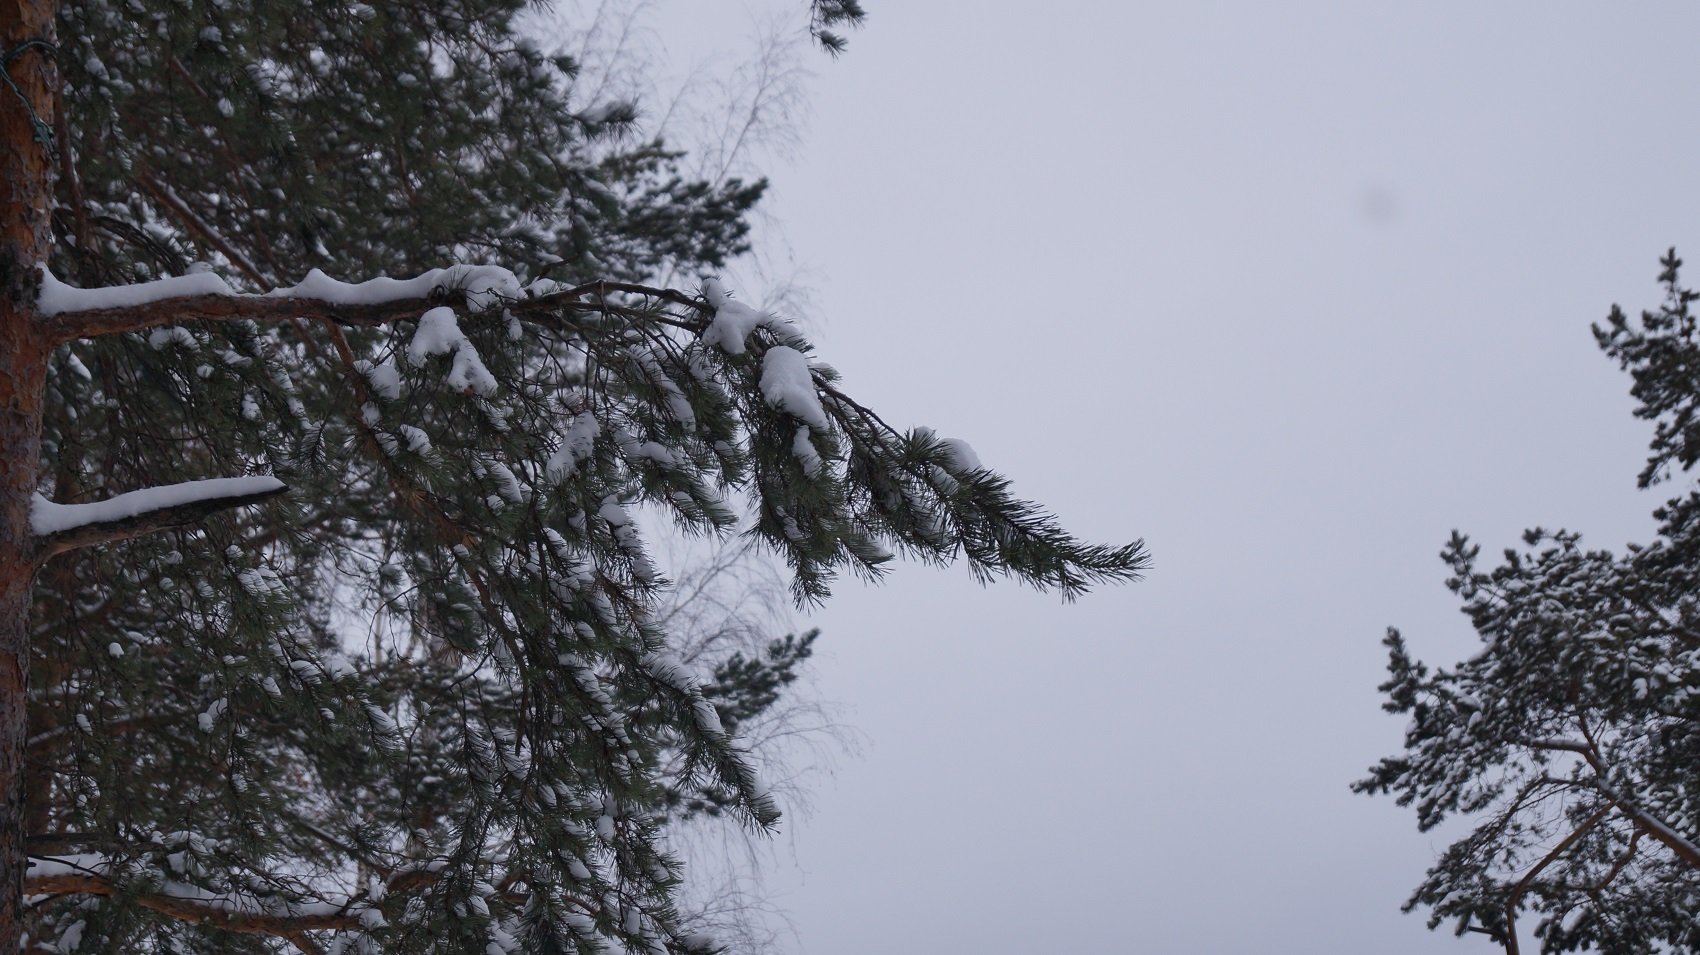 Елки, варежки, гирлянды. Как выглядит Первоуральск в декабре .